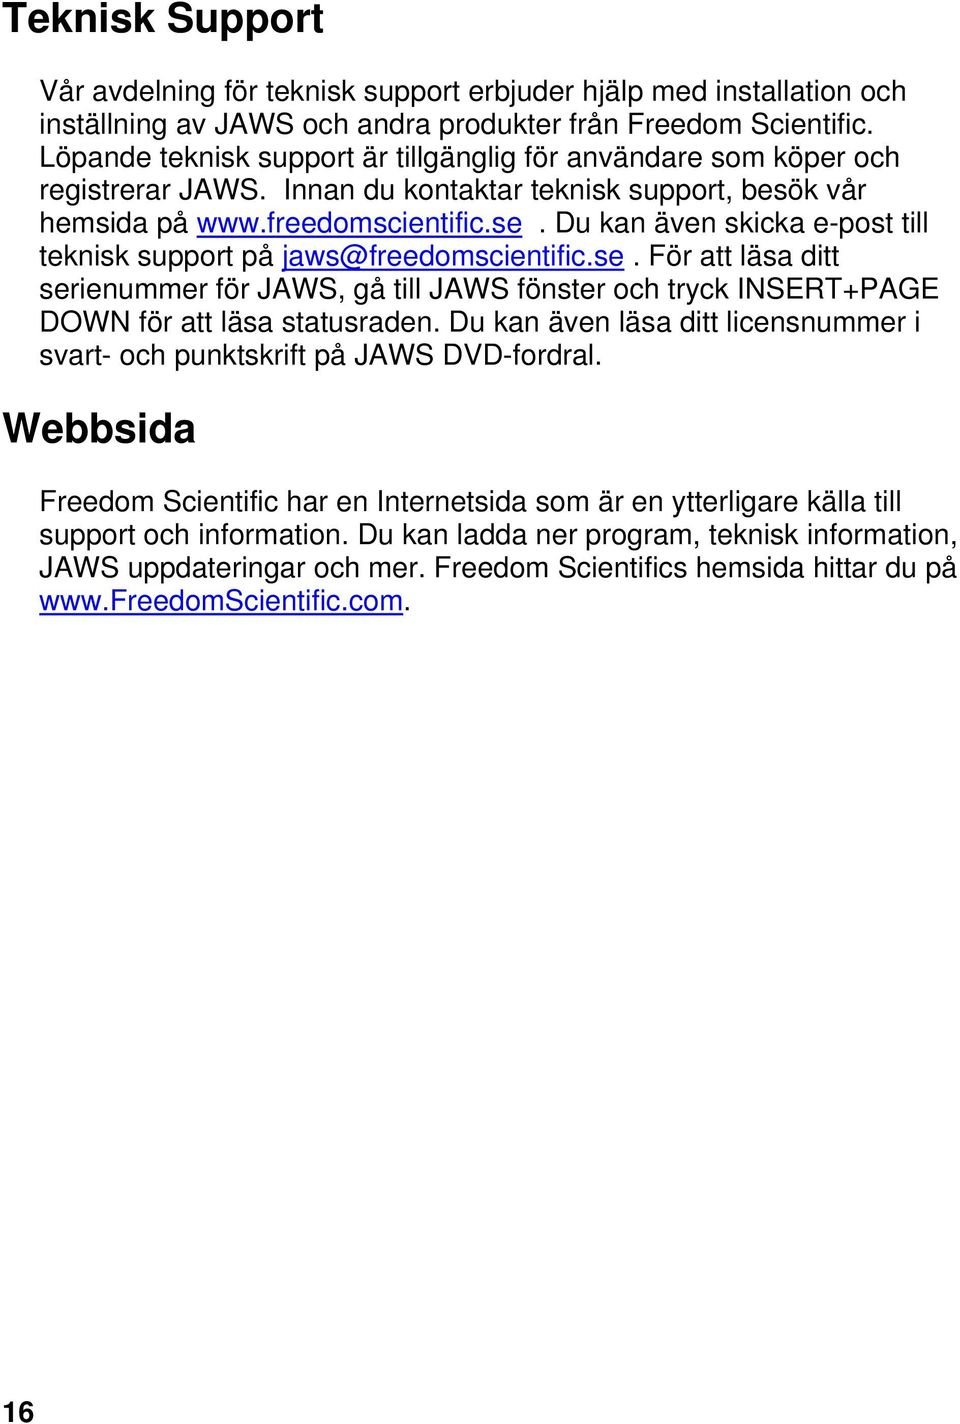 Du kan även skicka e-post till teknisk support på jaws@freedomscientific.se. För att läsa ditt serienummer för JAWS, gå till JAWS fönster och tryck INSERT+PAGE DOWN för att läsa statusraden.